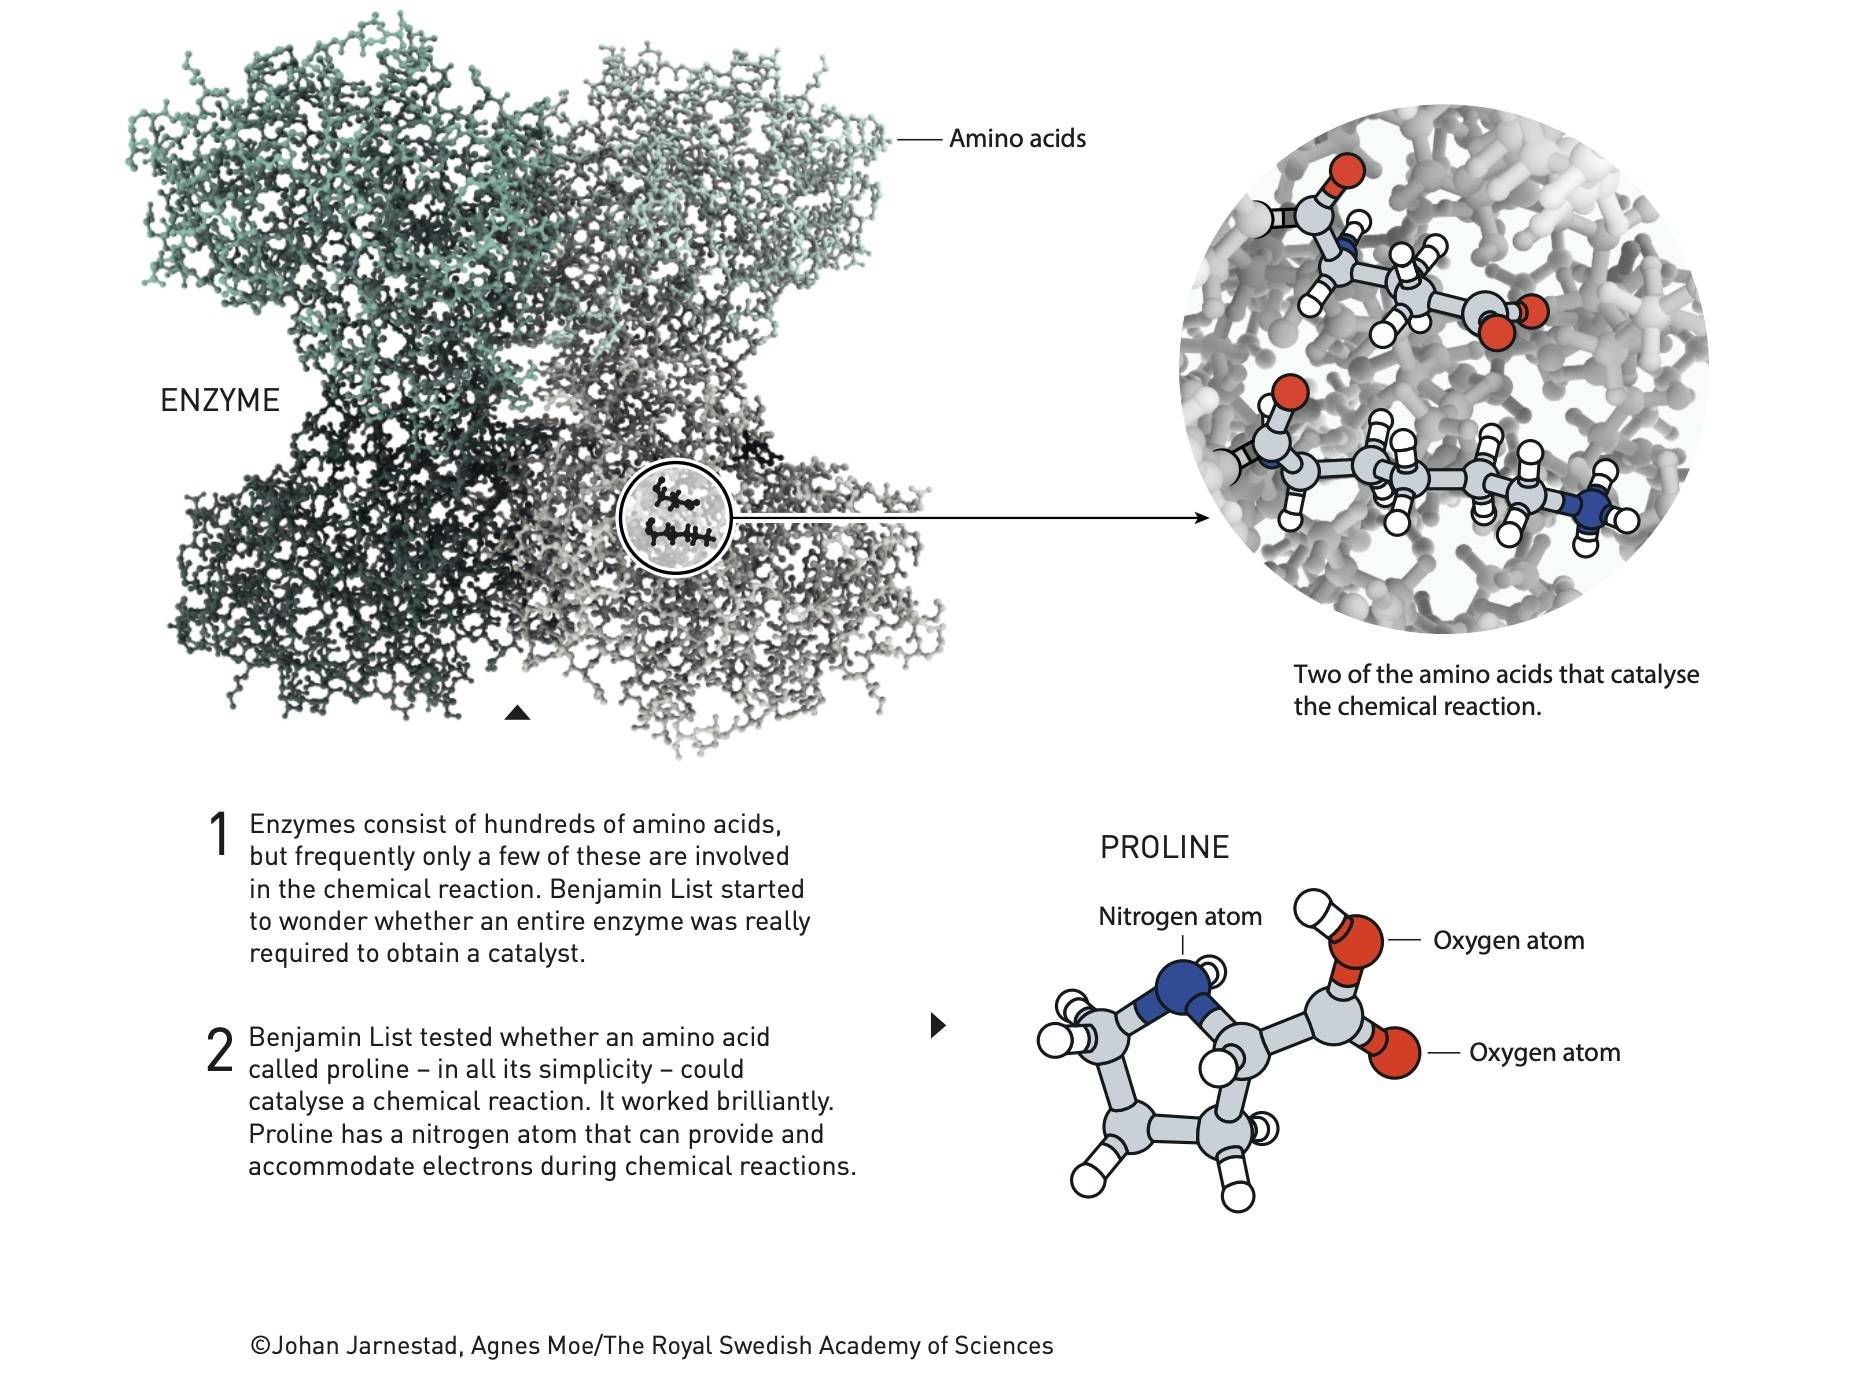 talkfresh 202 - Assegnato il Premio Nobel per la Chimica 2021: l’mRNA caldo accompagna la gara, regalando questa ricerca che potrebbe cambiare la tecnologia farmaceutica e delle batterie